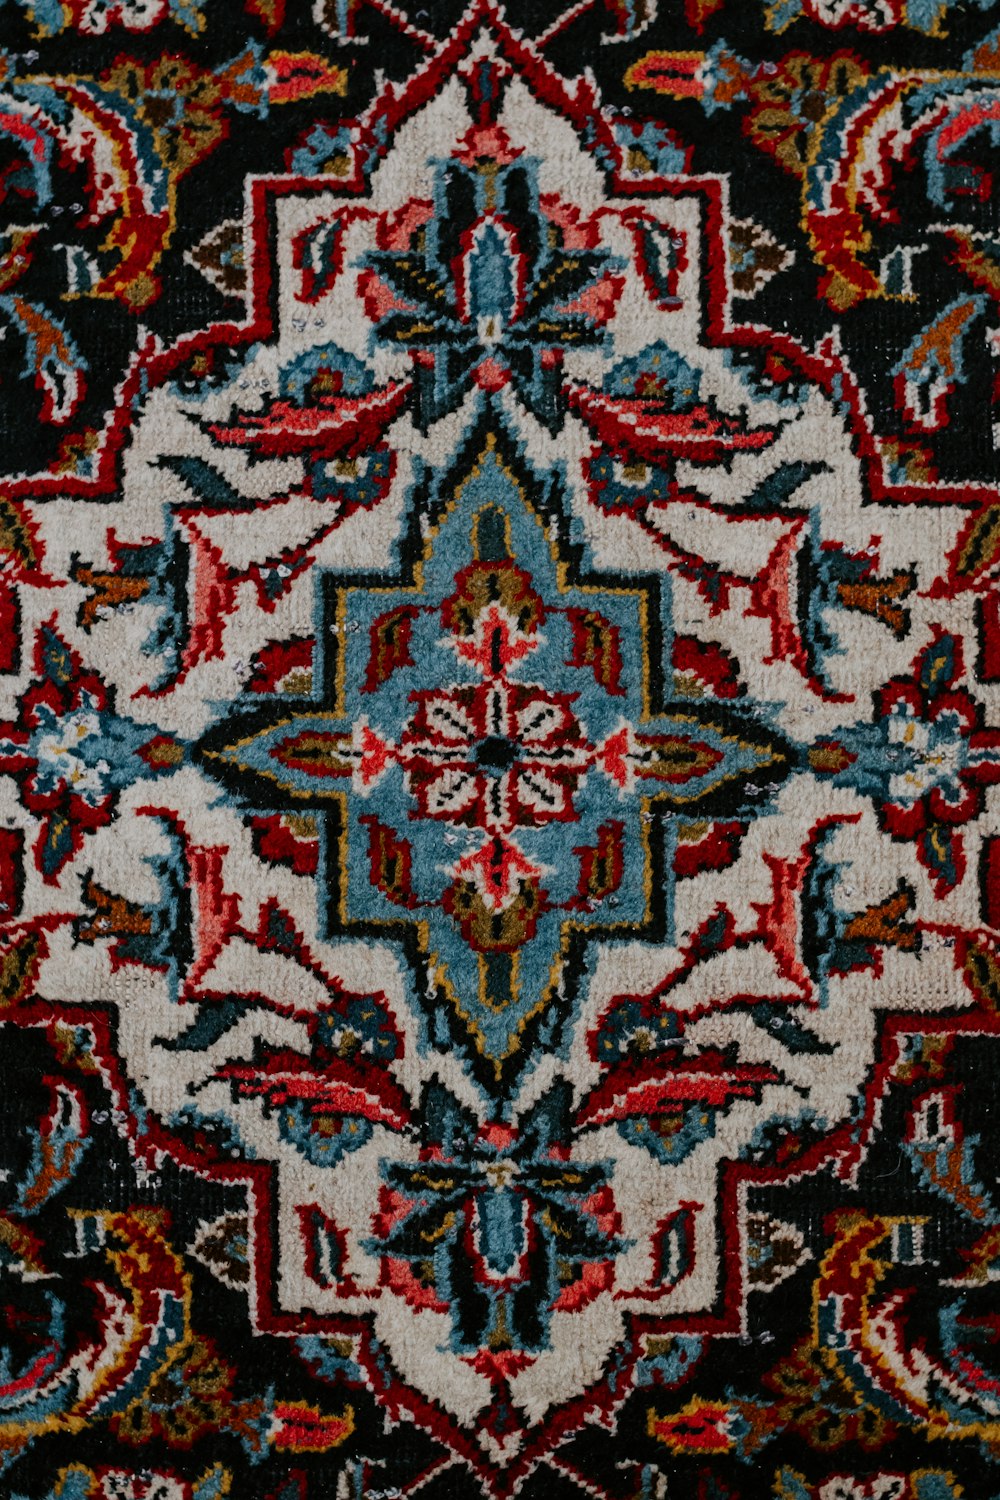 textil floral rojo blanco y negro